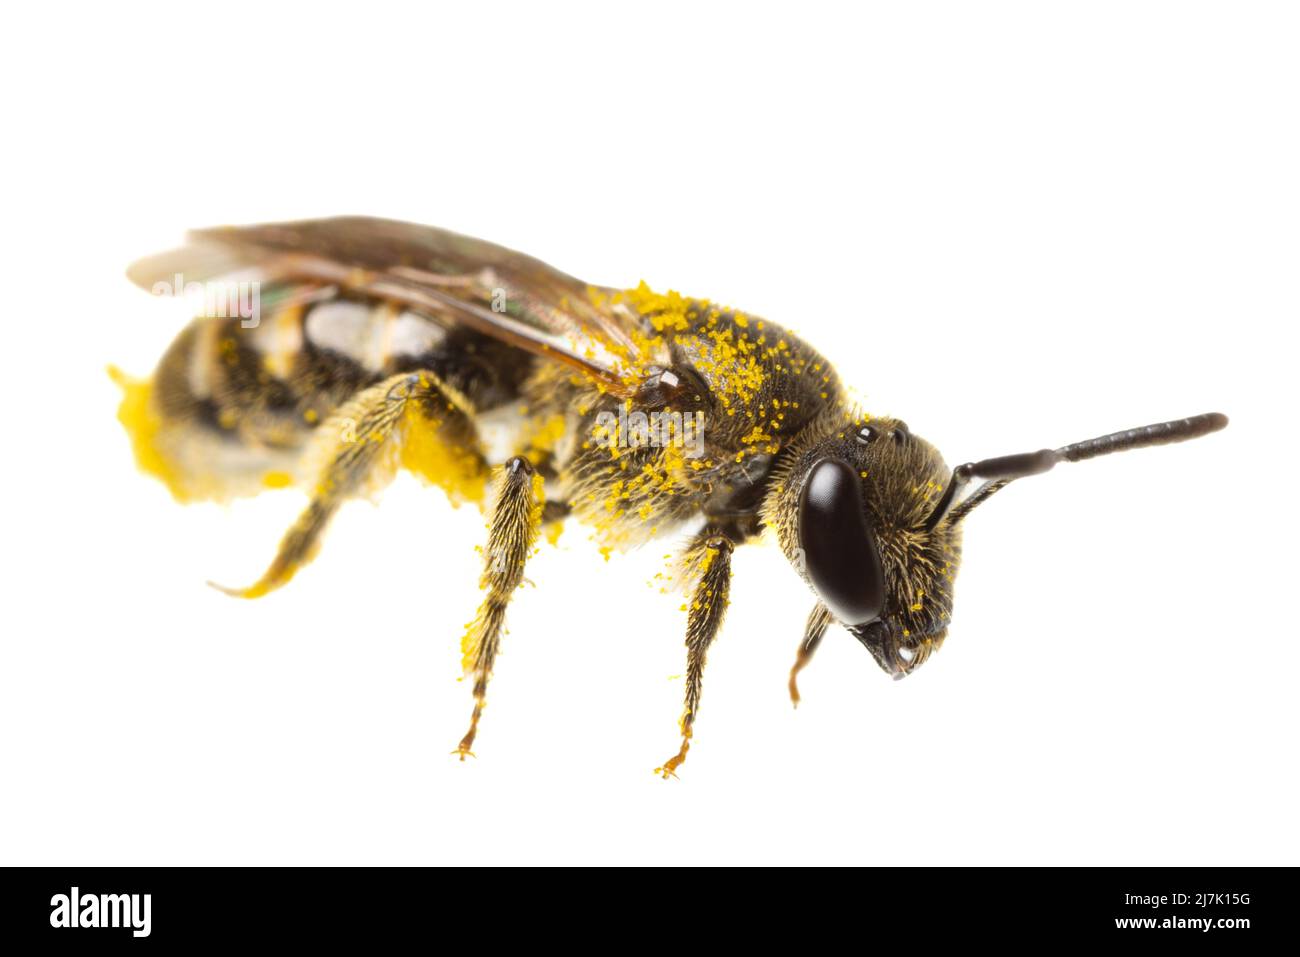 Insectos de europa - abejas: Vista lateral de la abeja dulce femenina ( Lasioglossum german Schmalbiene ) aislada sobre fondo blanco con polen en todas partes Foto de stock